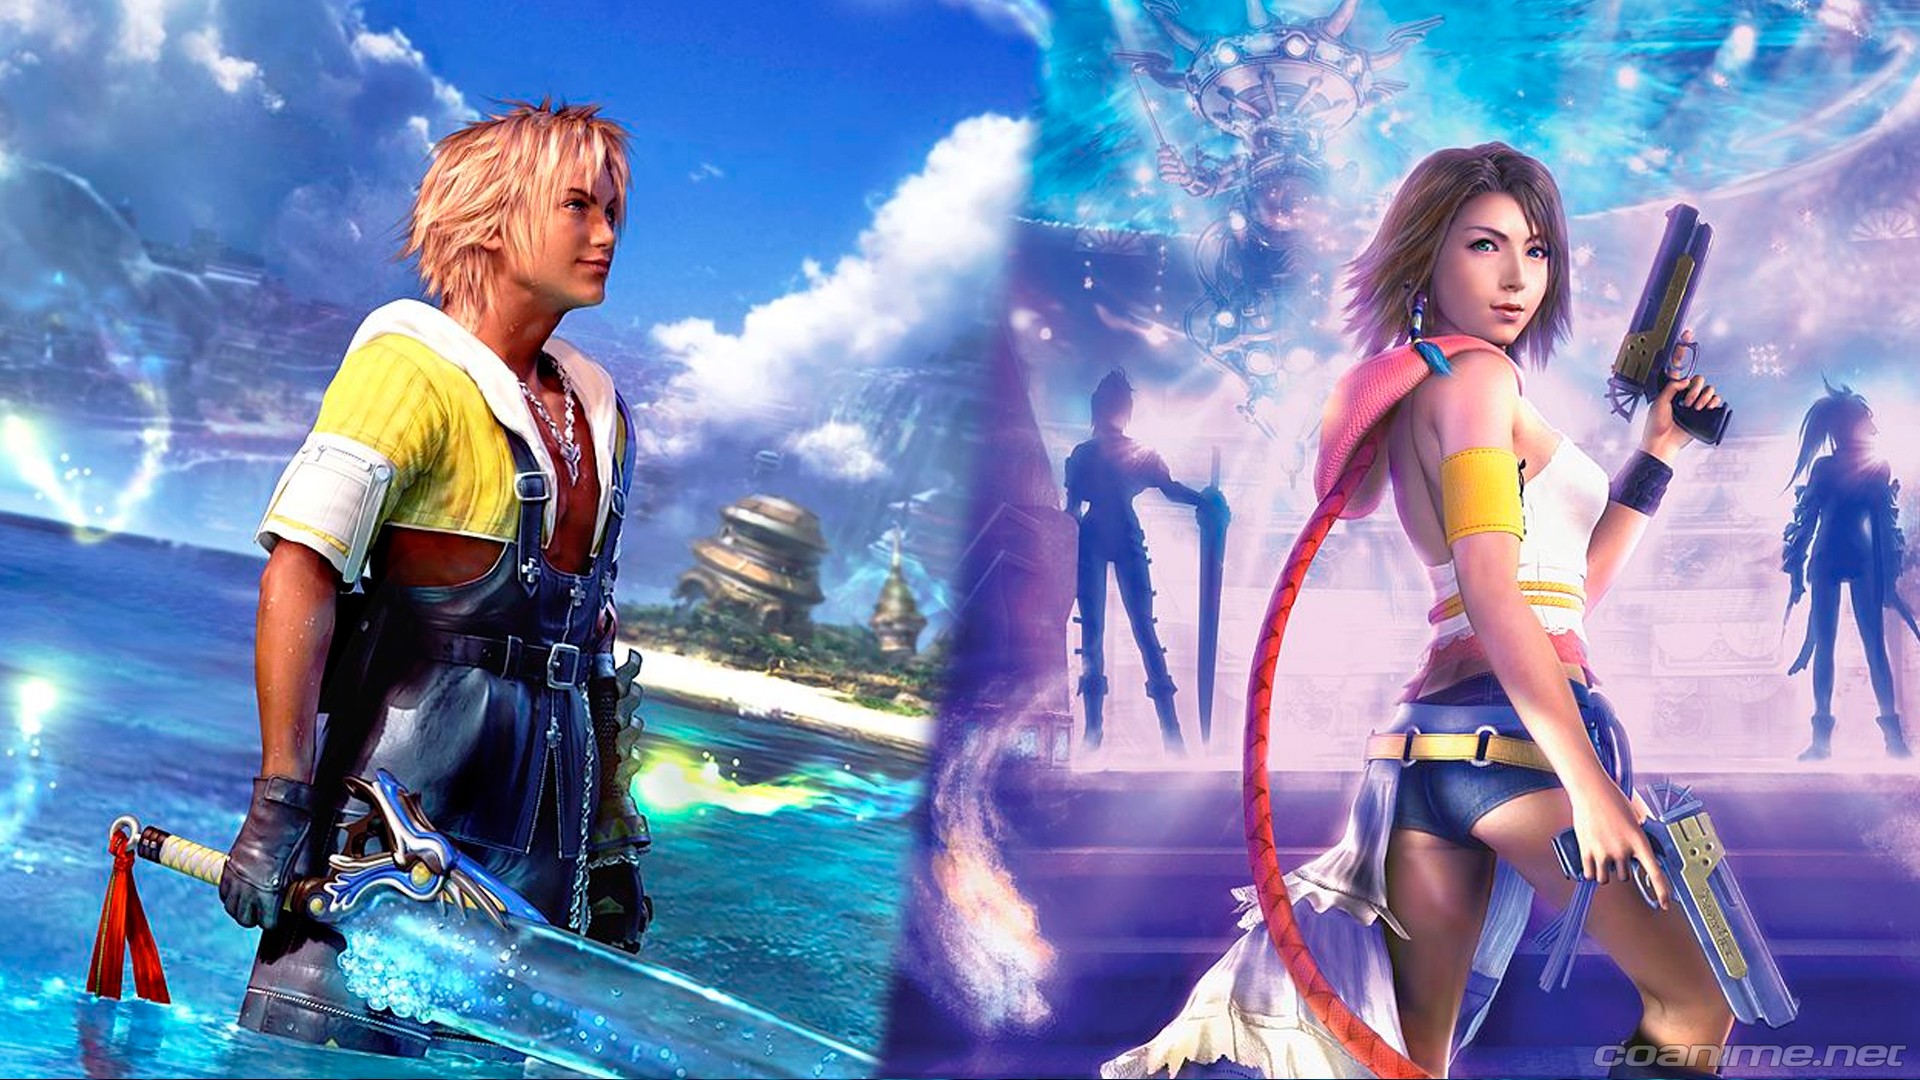 Final Fantasy X / X-2 HD Remaster con nuevo tráiler de lanzamiento  - Coanime.net